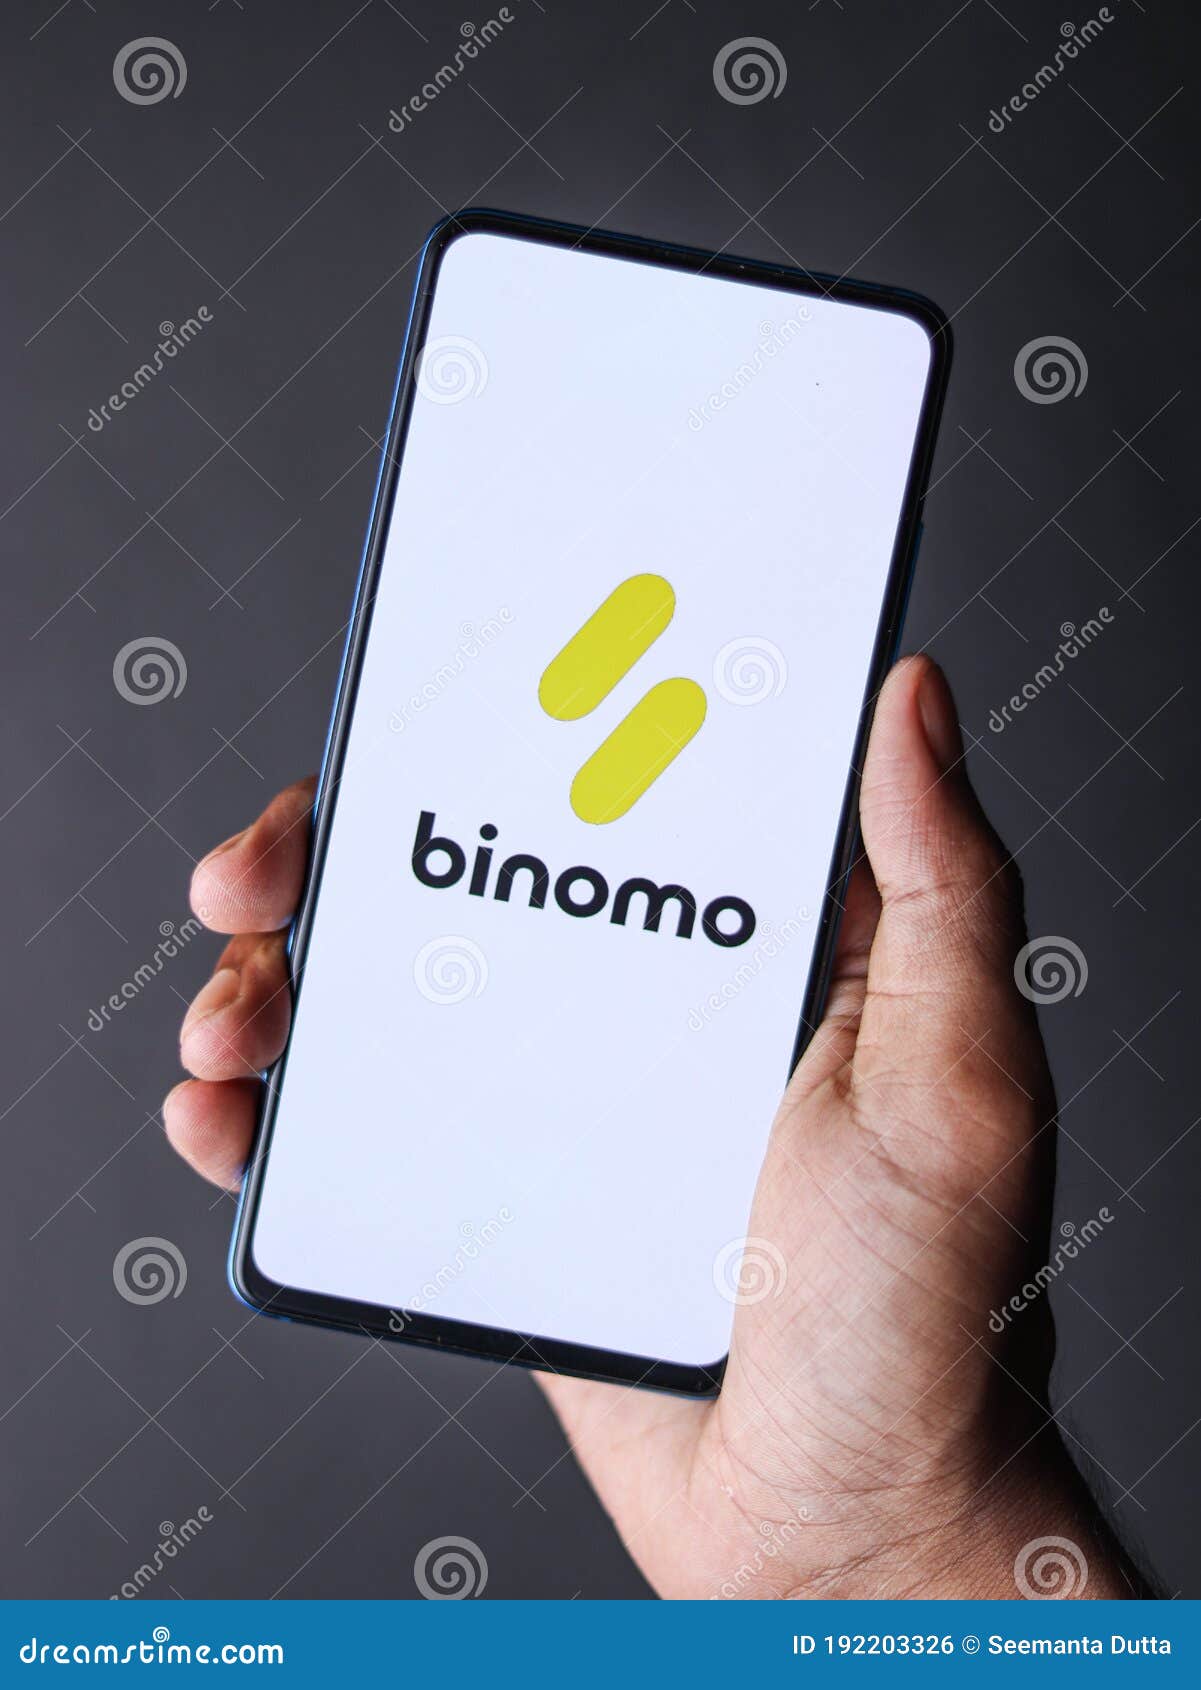 Binomo - For Beginners